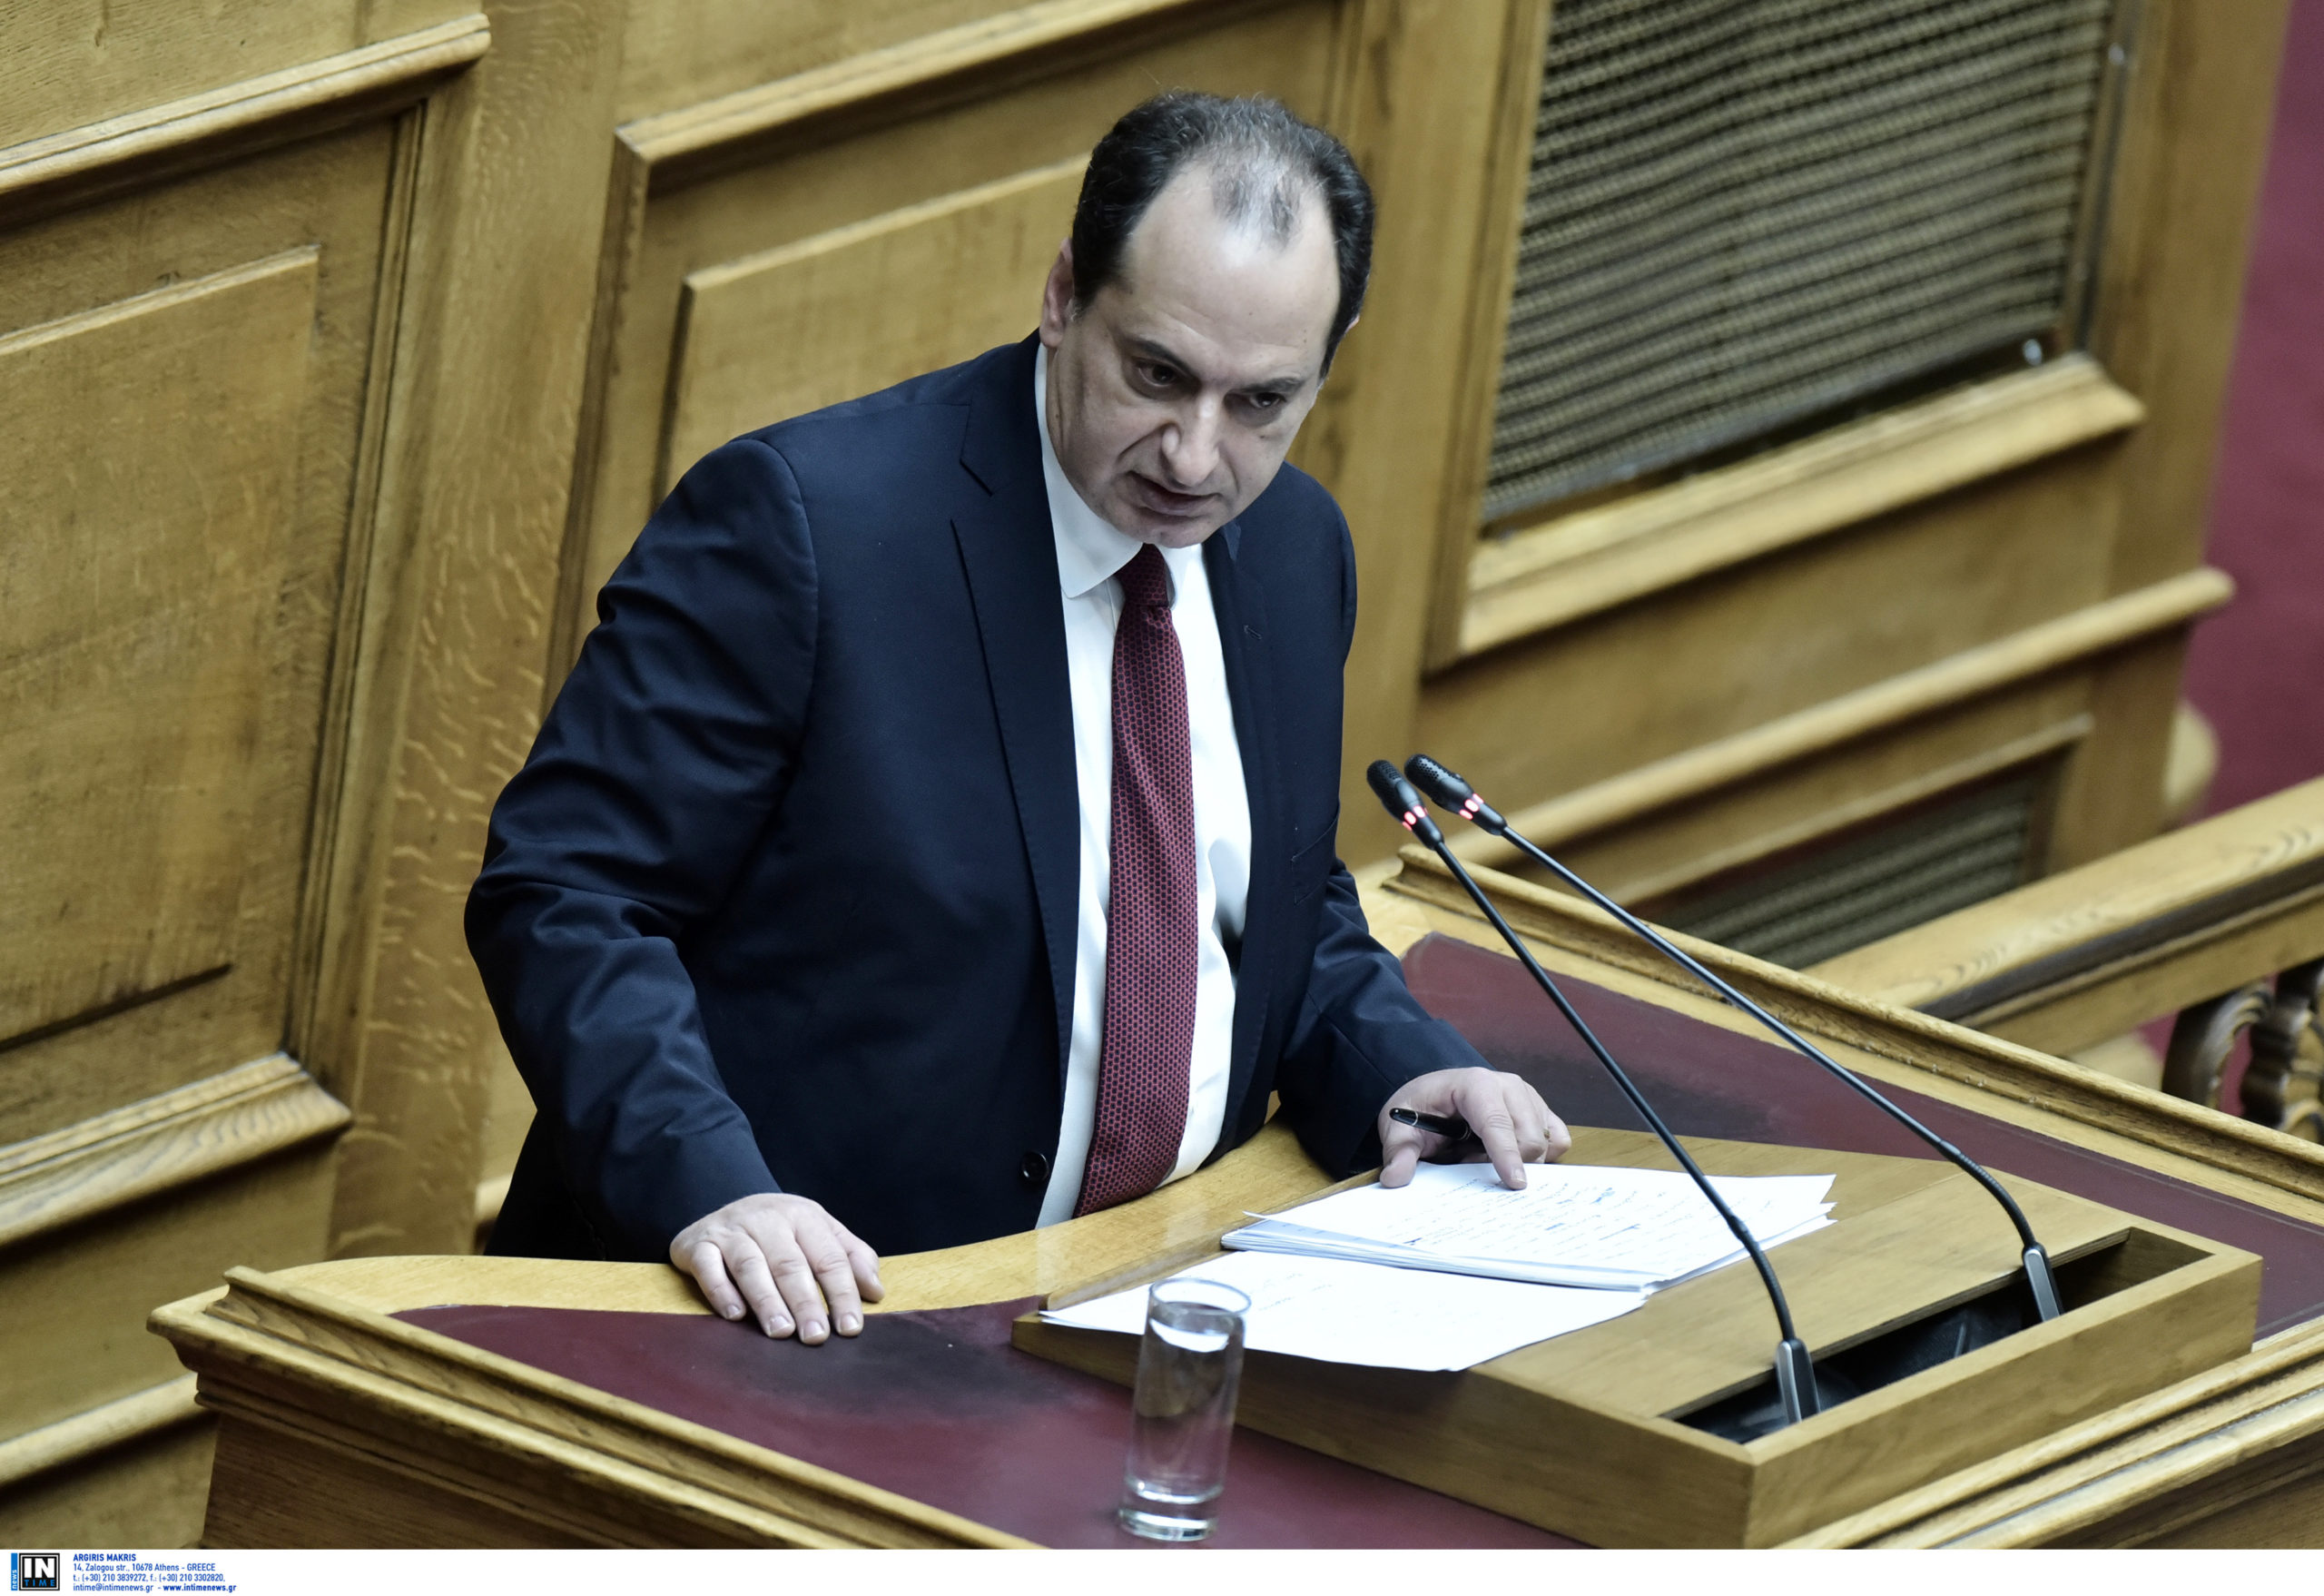 σπίρτζης: όταν εμείς πλακωνόμασταν για τα μέλη, ο κασσελάκης συζητούσε να γίνει υπουργός του μητσοτάκη